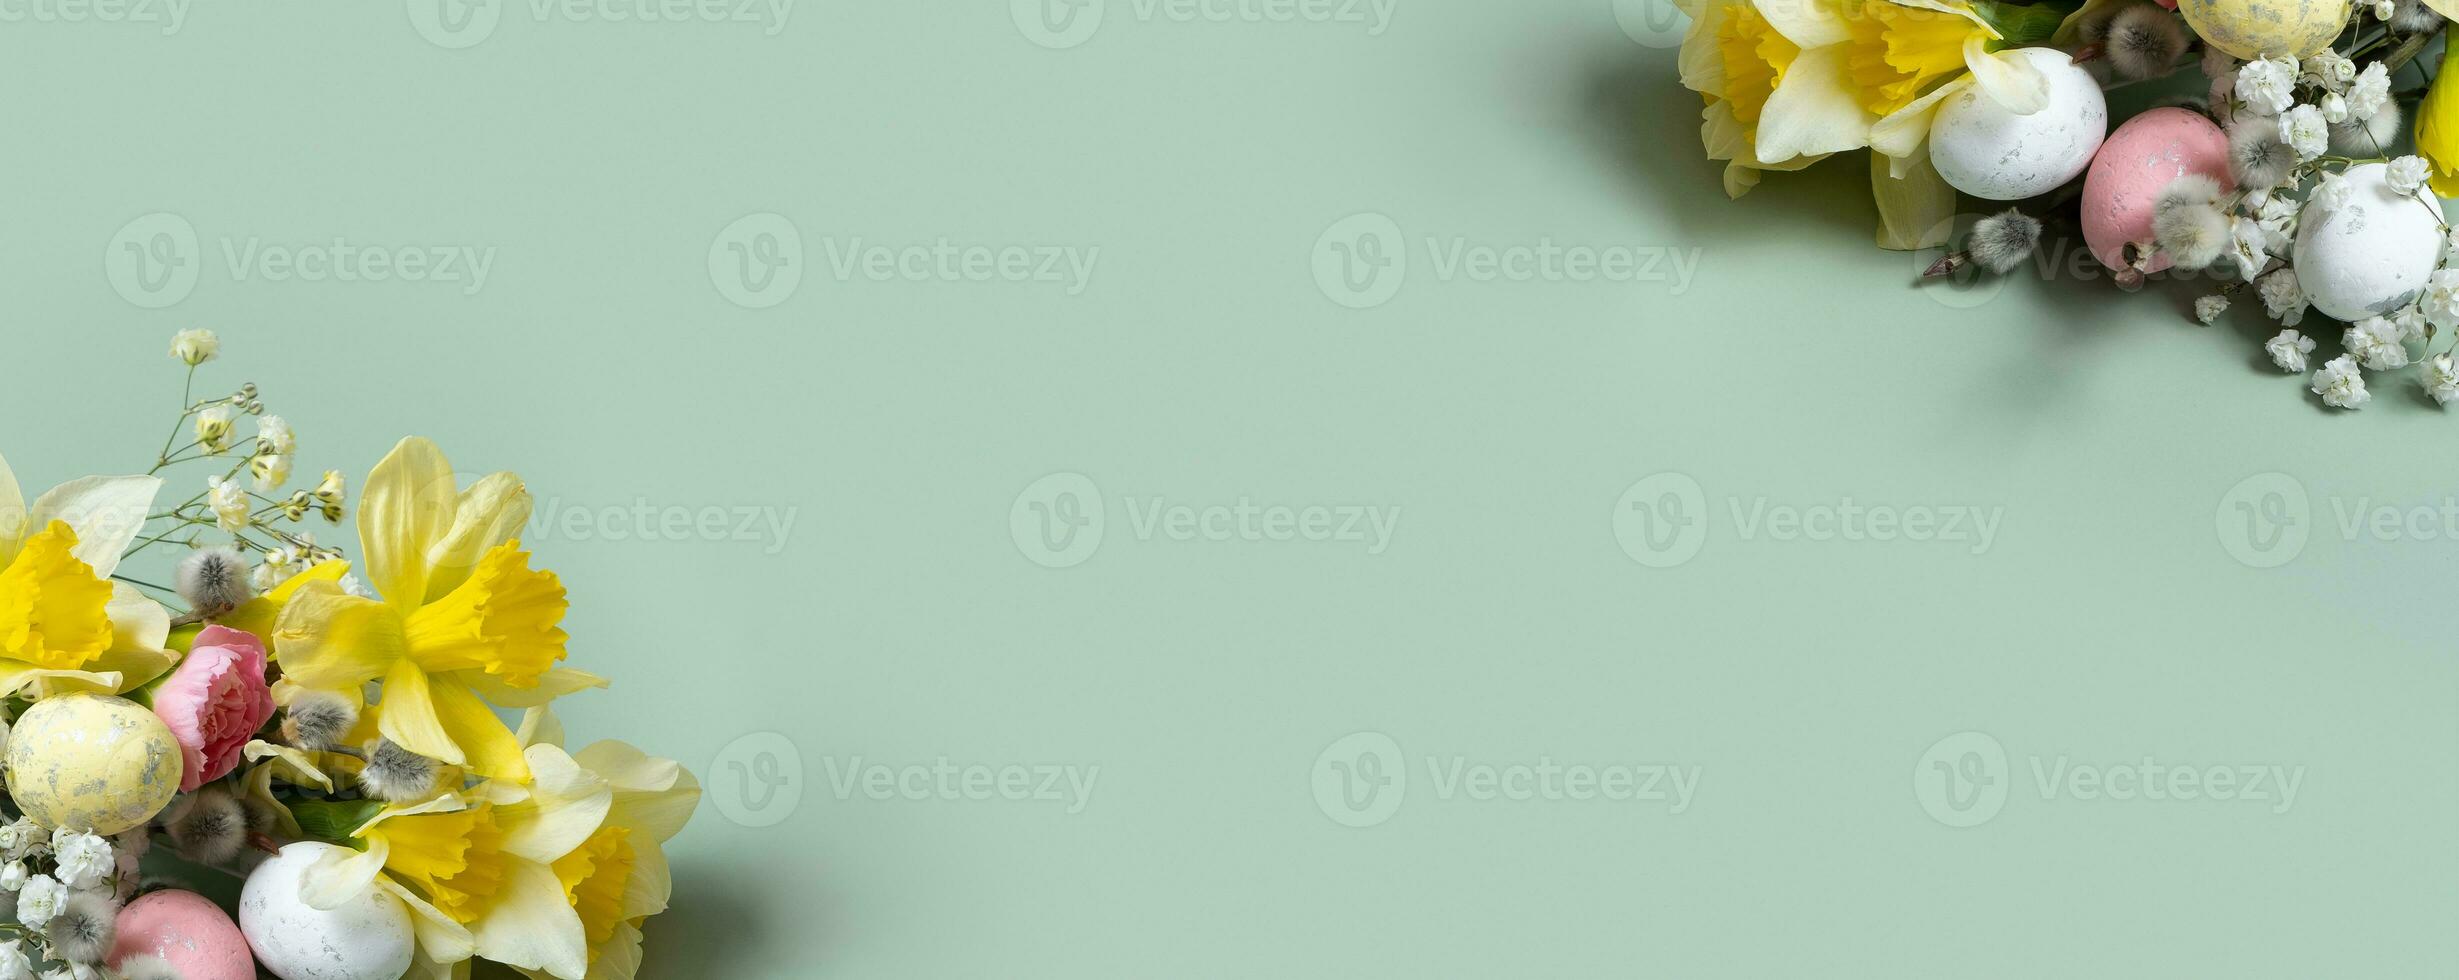 Narzissen, Ostern Eier und Weide auf Grün Hintergrund mit Kopieren Raum. Ostern Gruß Banner Vorlage foto